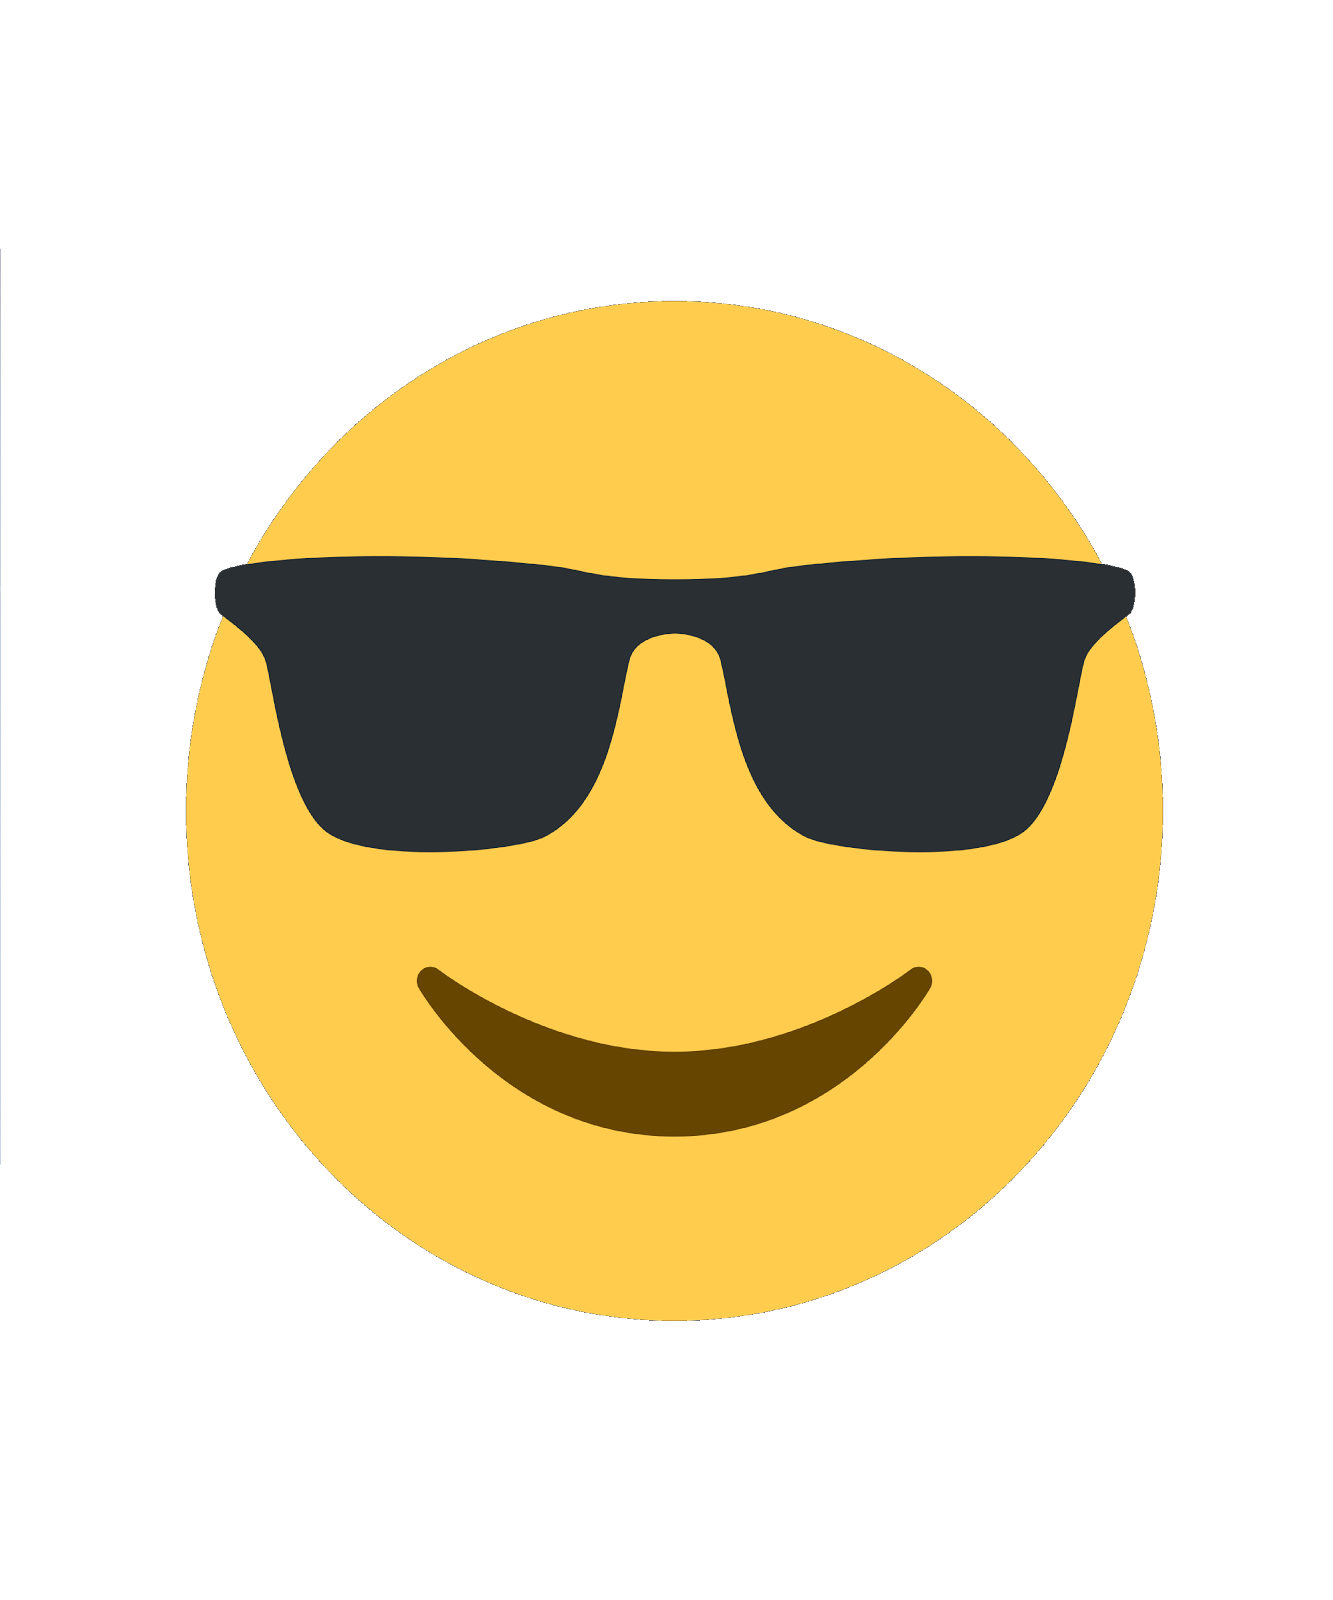 emoji with sunglasses